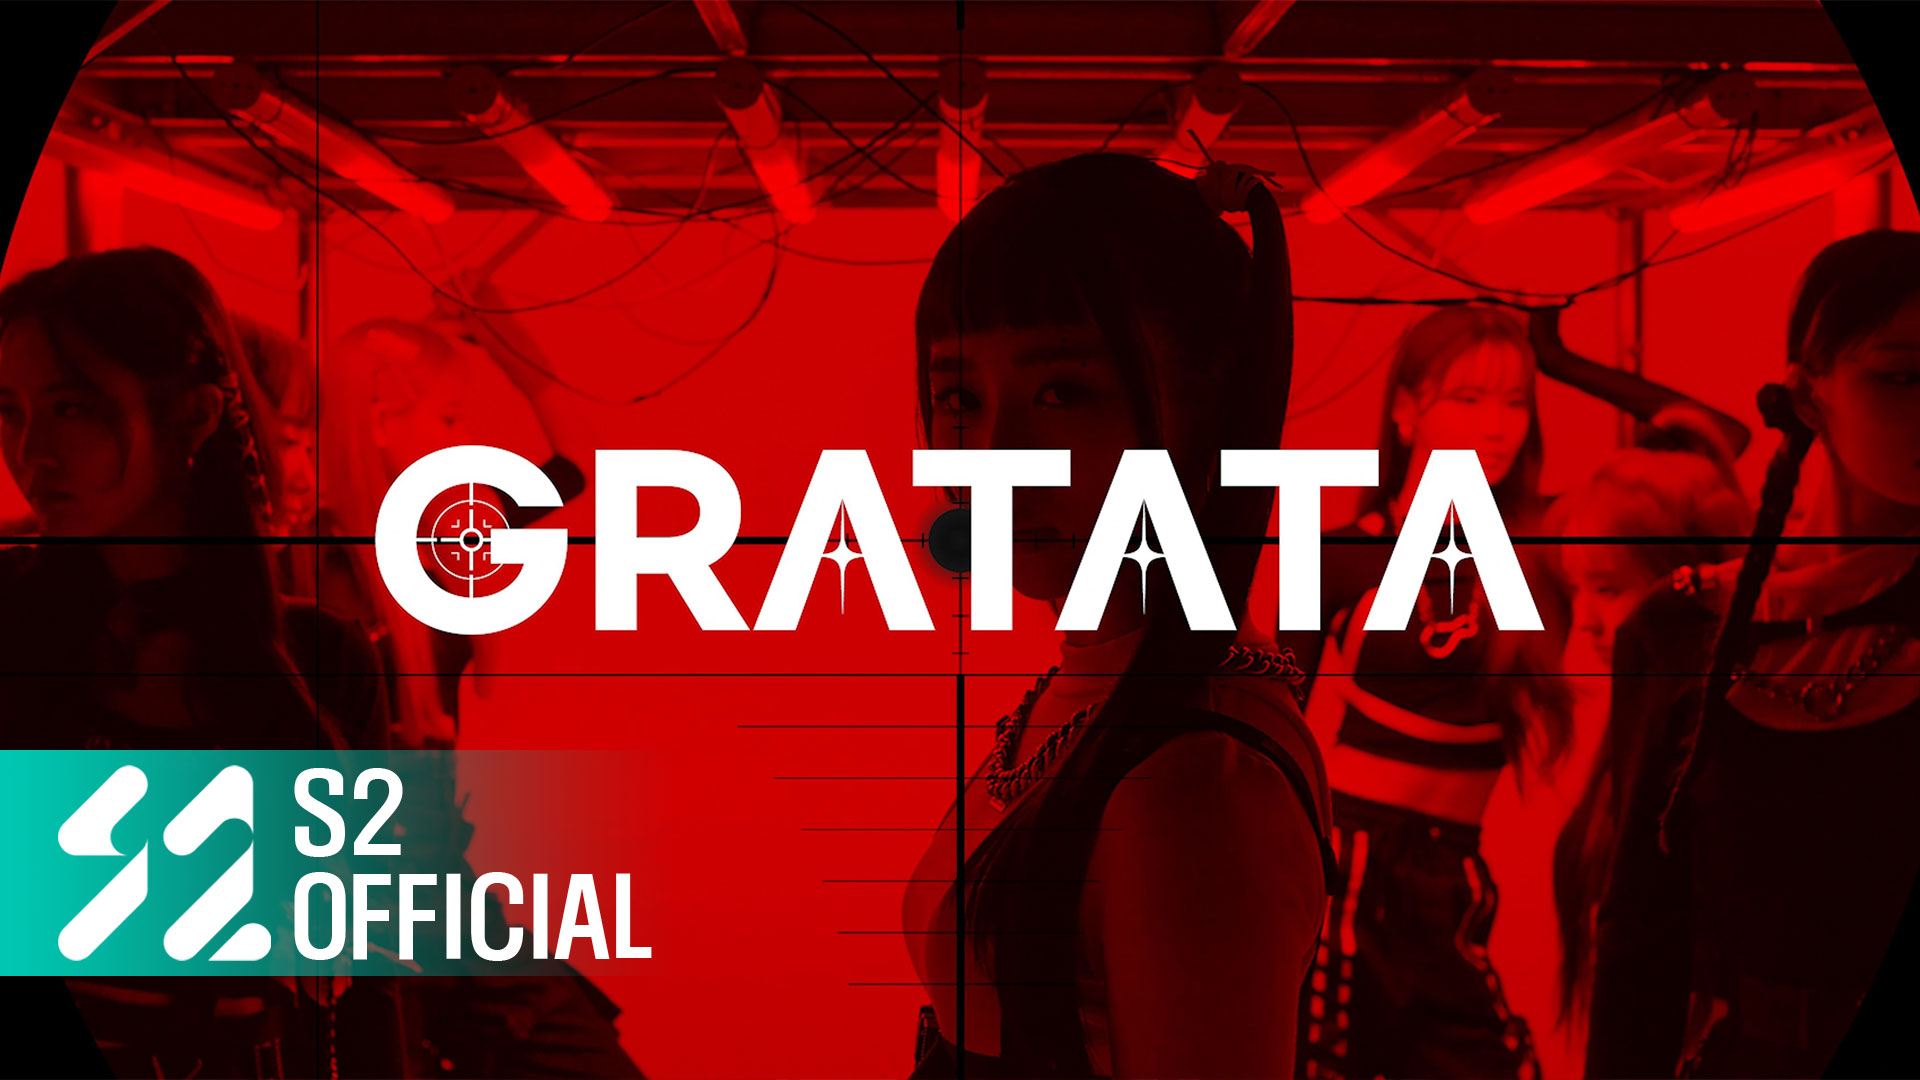 핫이슈 (HOT ISSUE) - '그라타타 (GRATATA)' Official MV